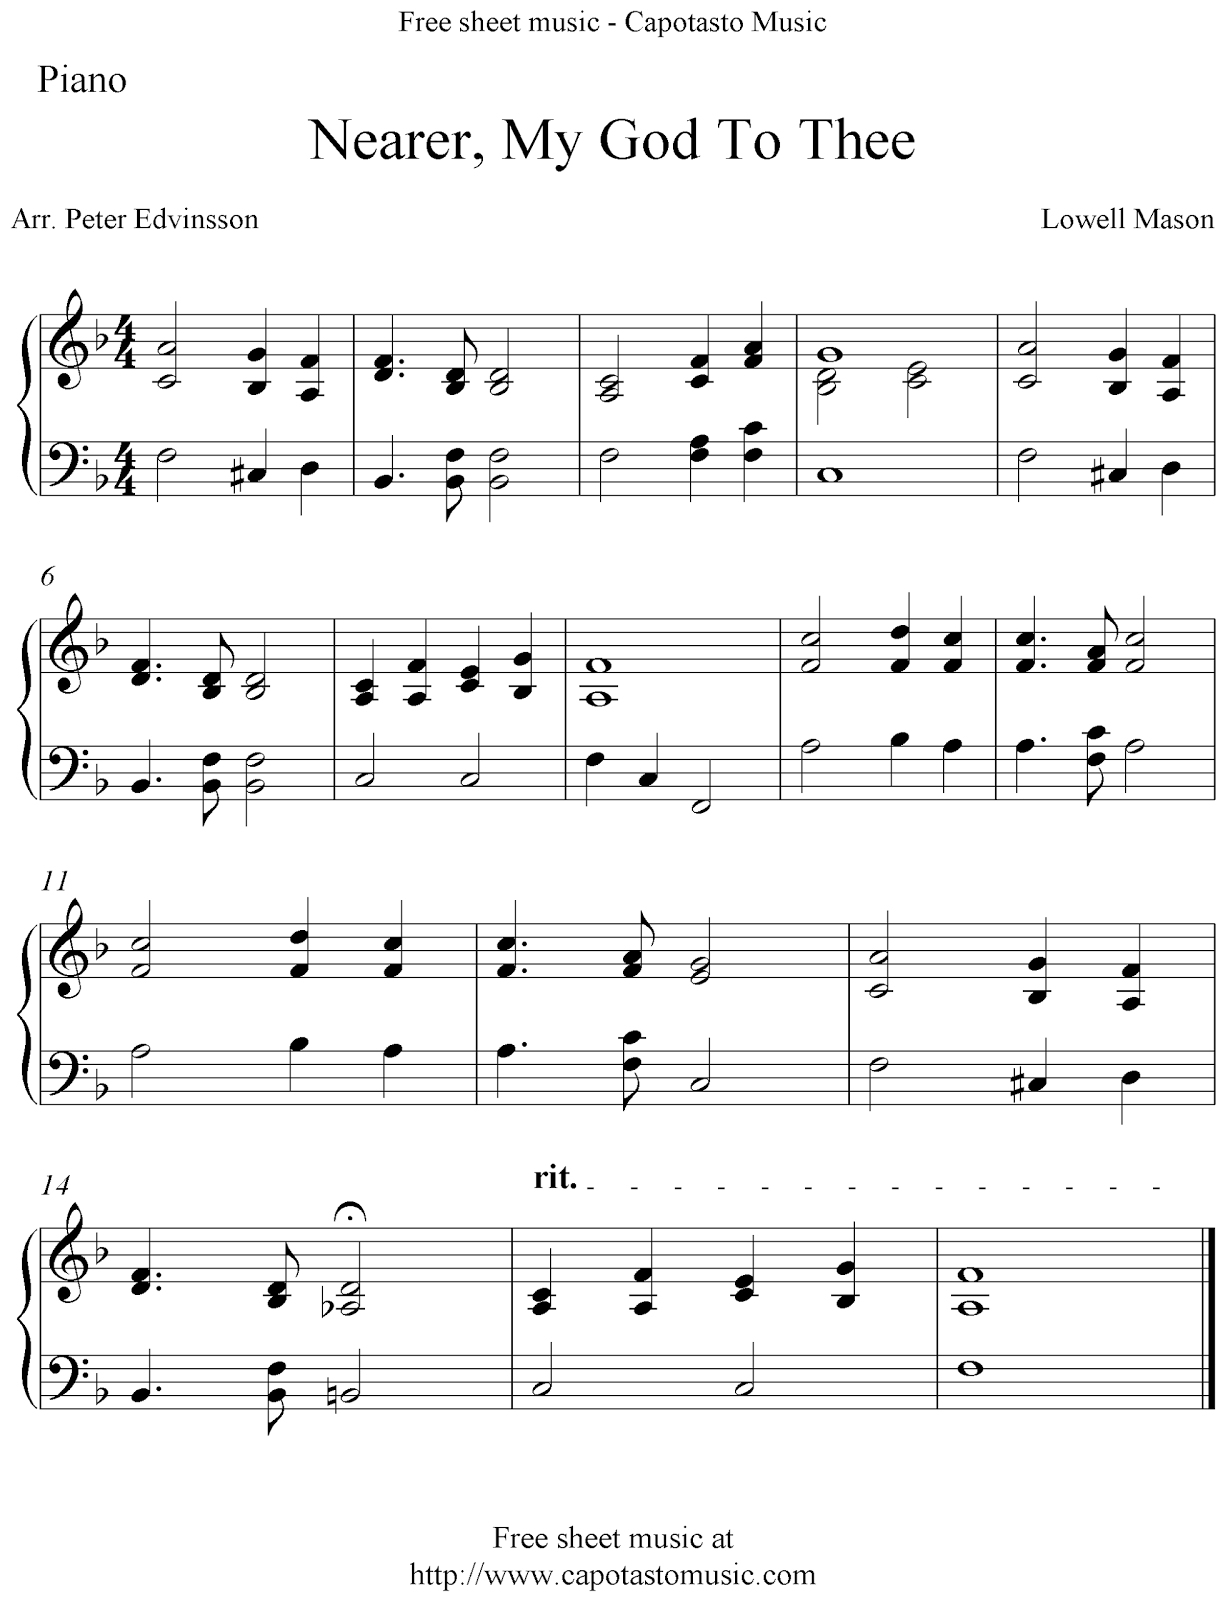 Free Sheet Music Scores: Free Easy Piano Sheet Music, Nearer, My God - Free Printable Sheet Music For Piano